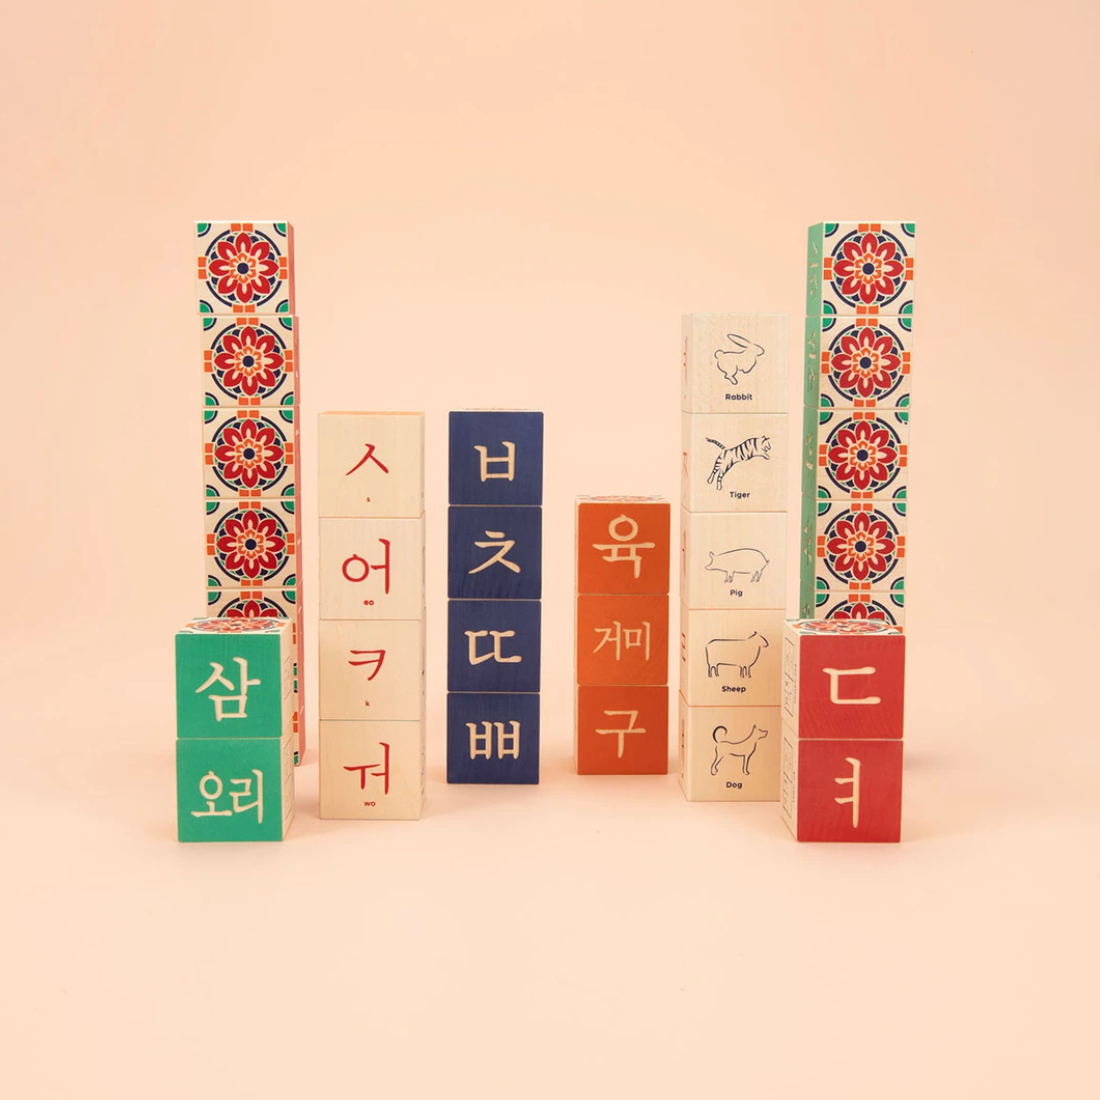 Korean Blocks